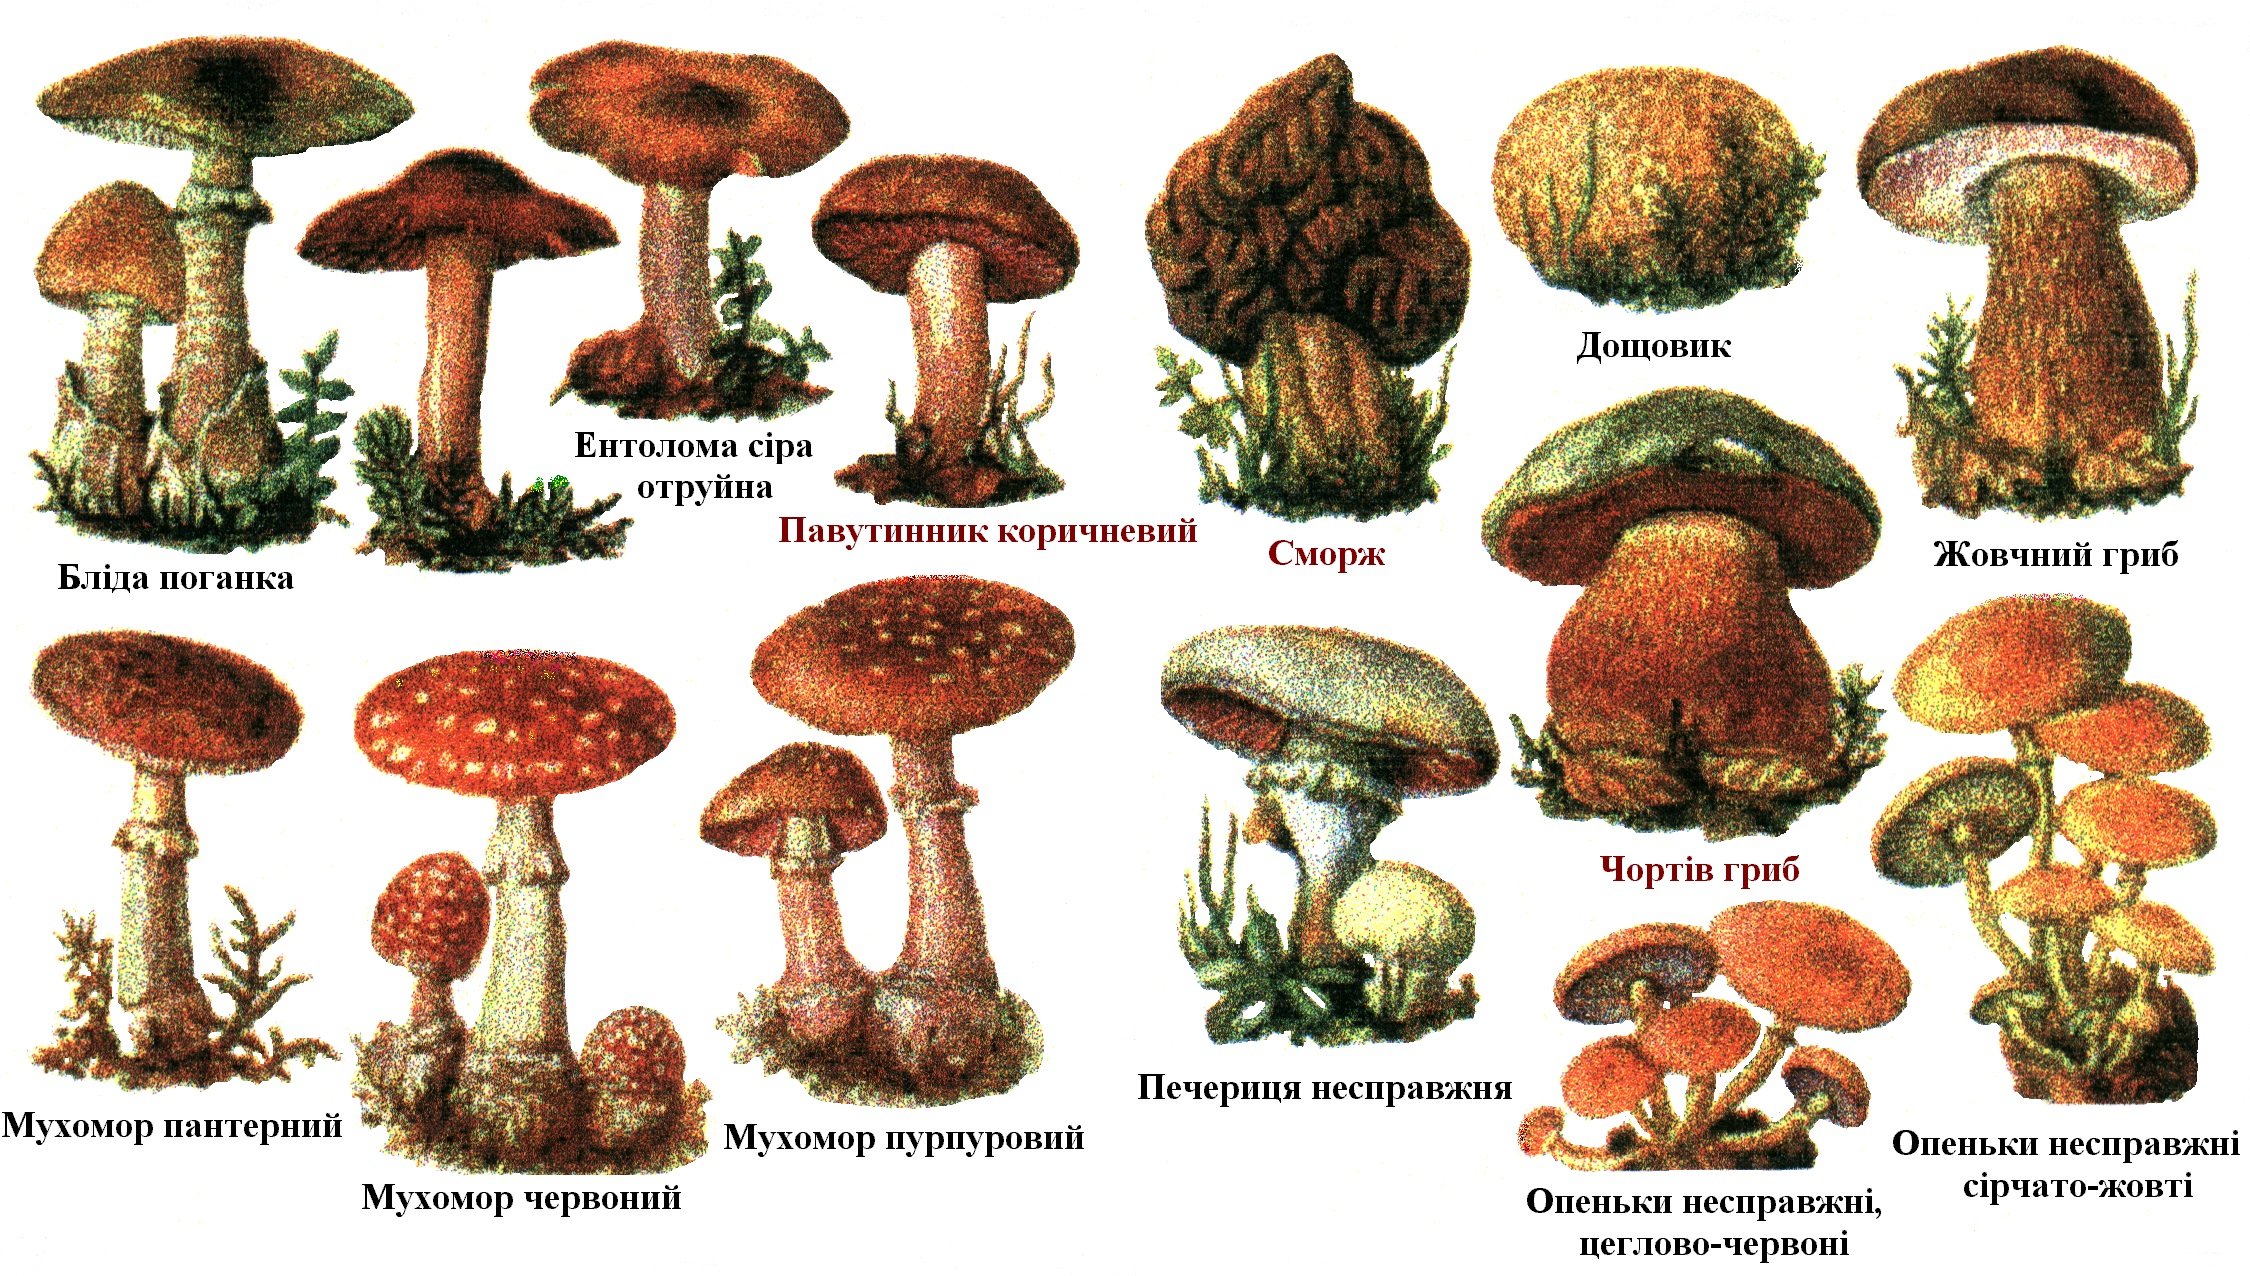 Грибы на букву т. Съедобные условно съедобные и несъедобные грибы. Съедобные грибы и несъедобные грибы. Условносьедобные грибы и несъедобные. Условно съедобные грибы названия грибов.